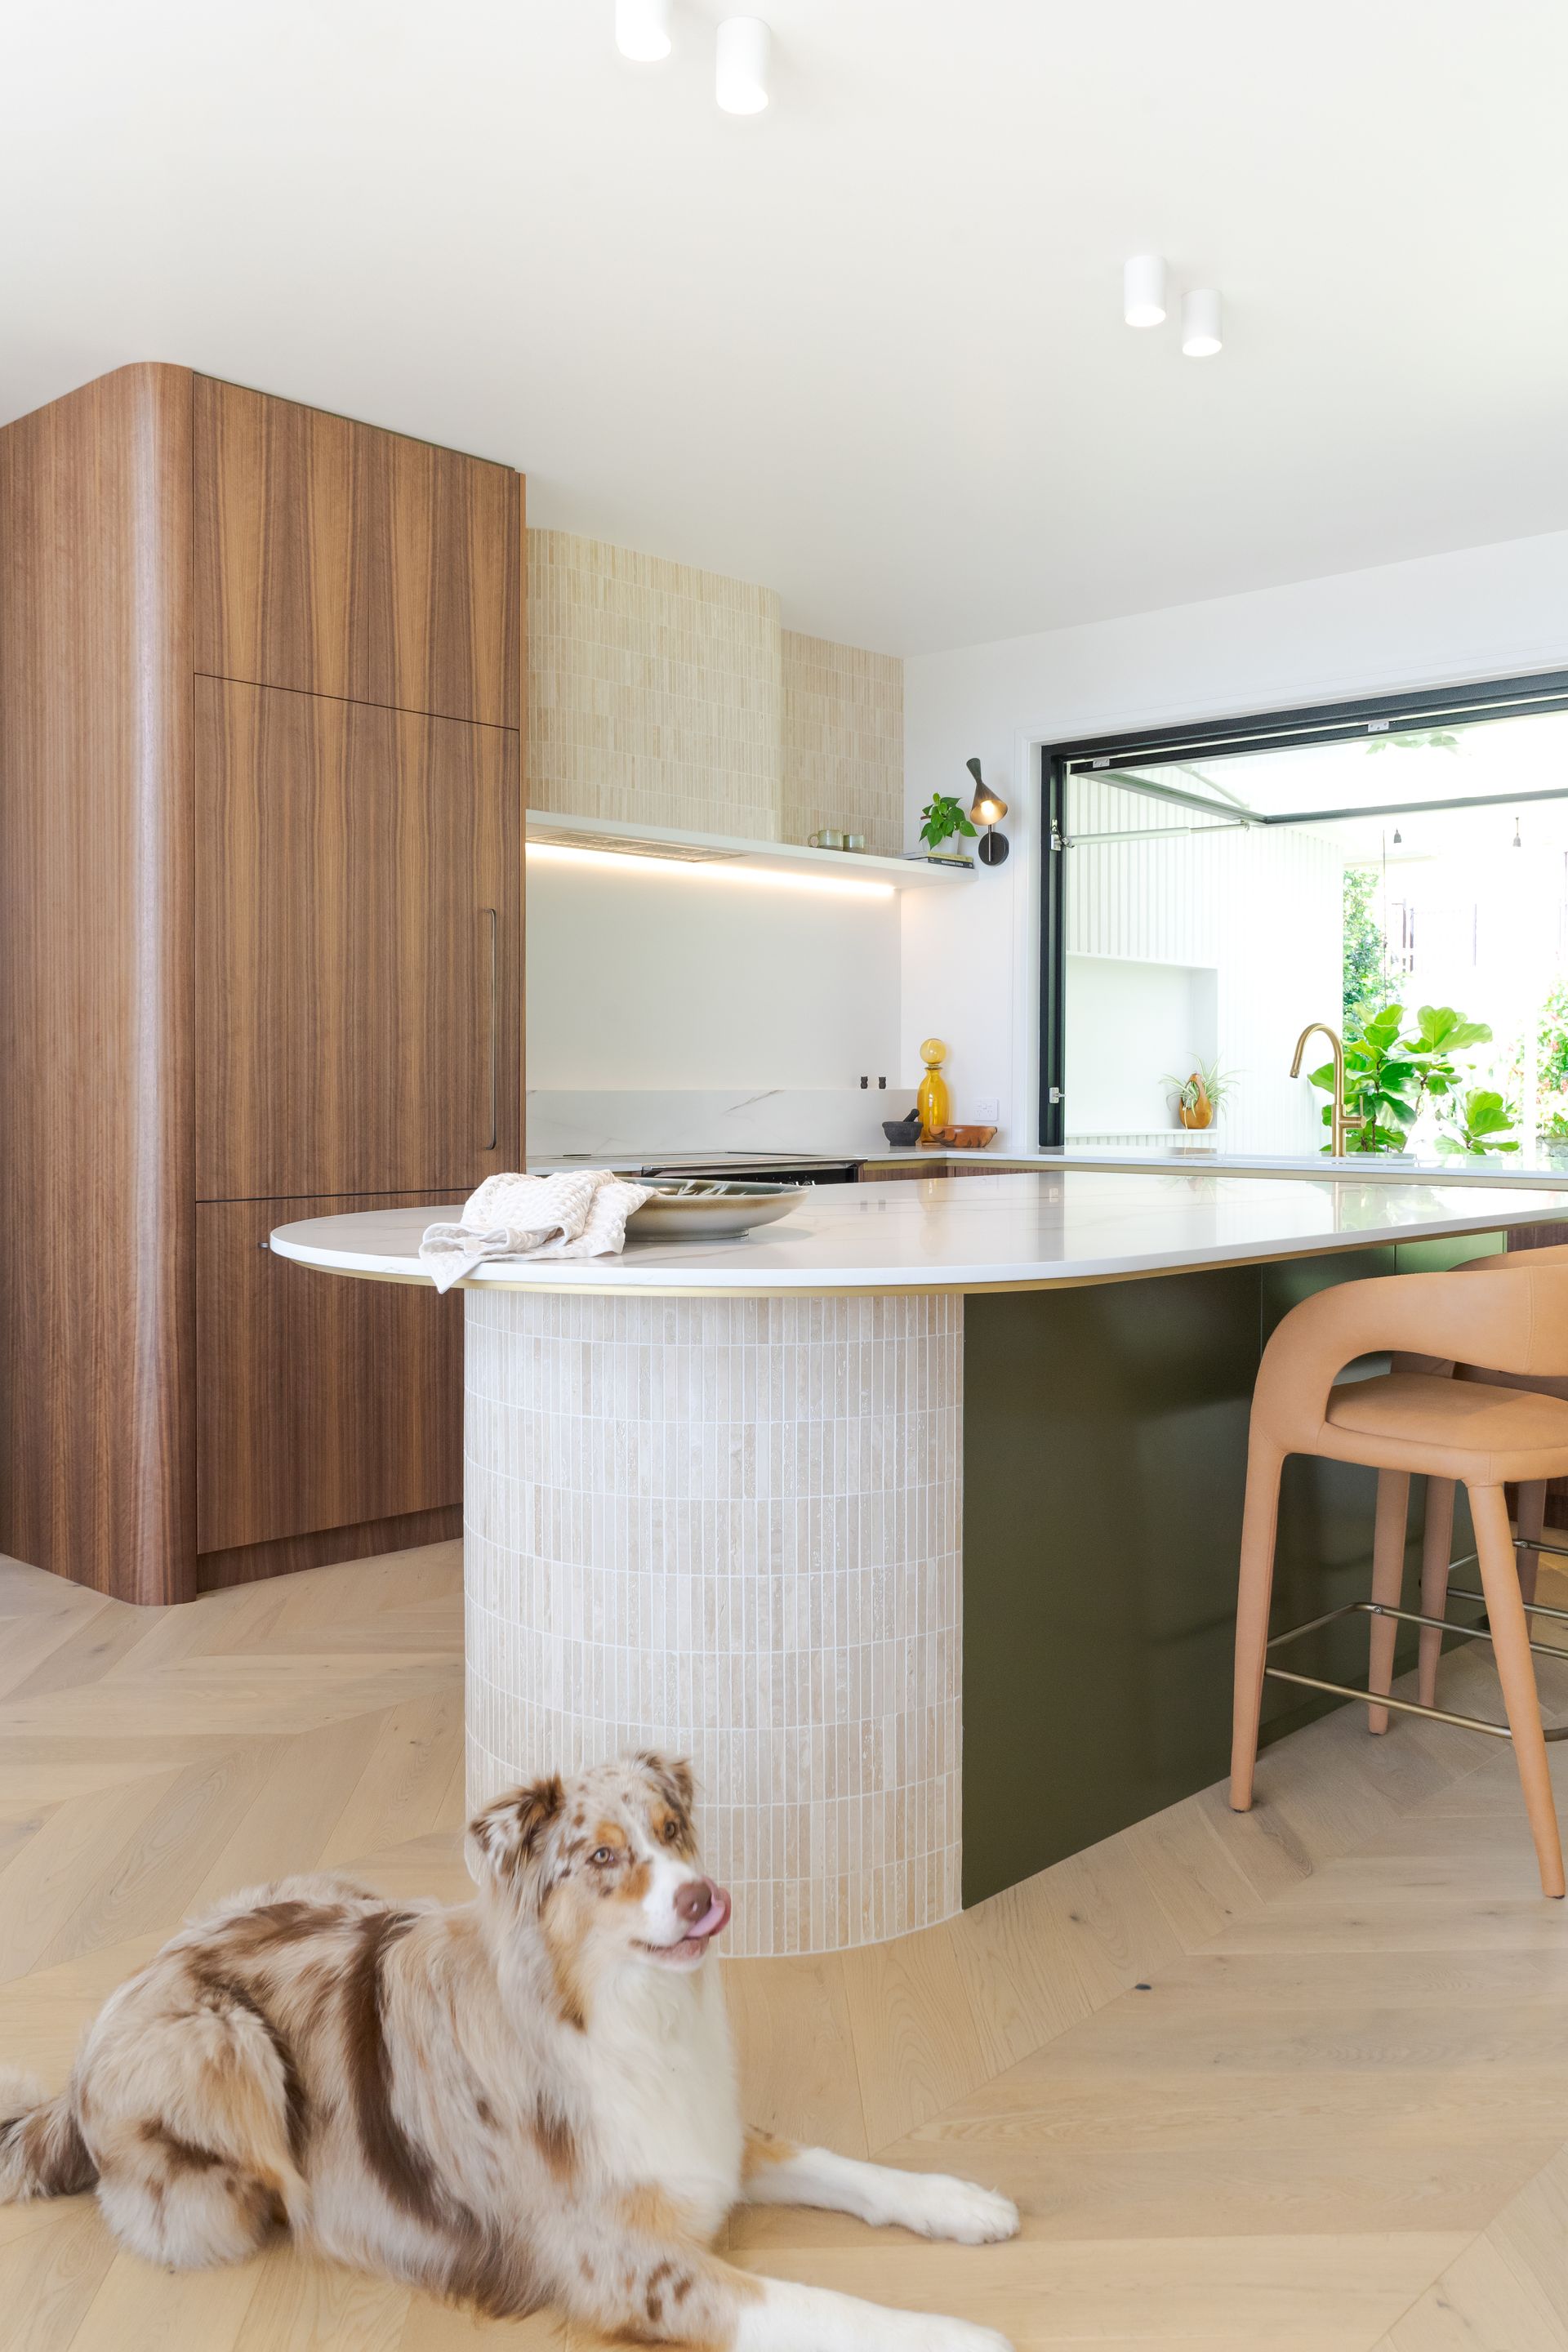 Mid Century modern custom kitchen design by our Vista Kitchens dream kitchens Newcastle team